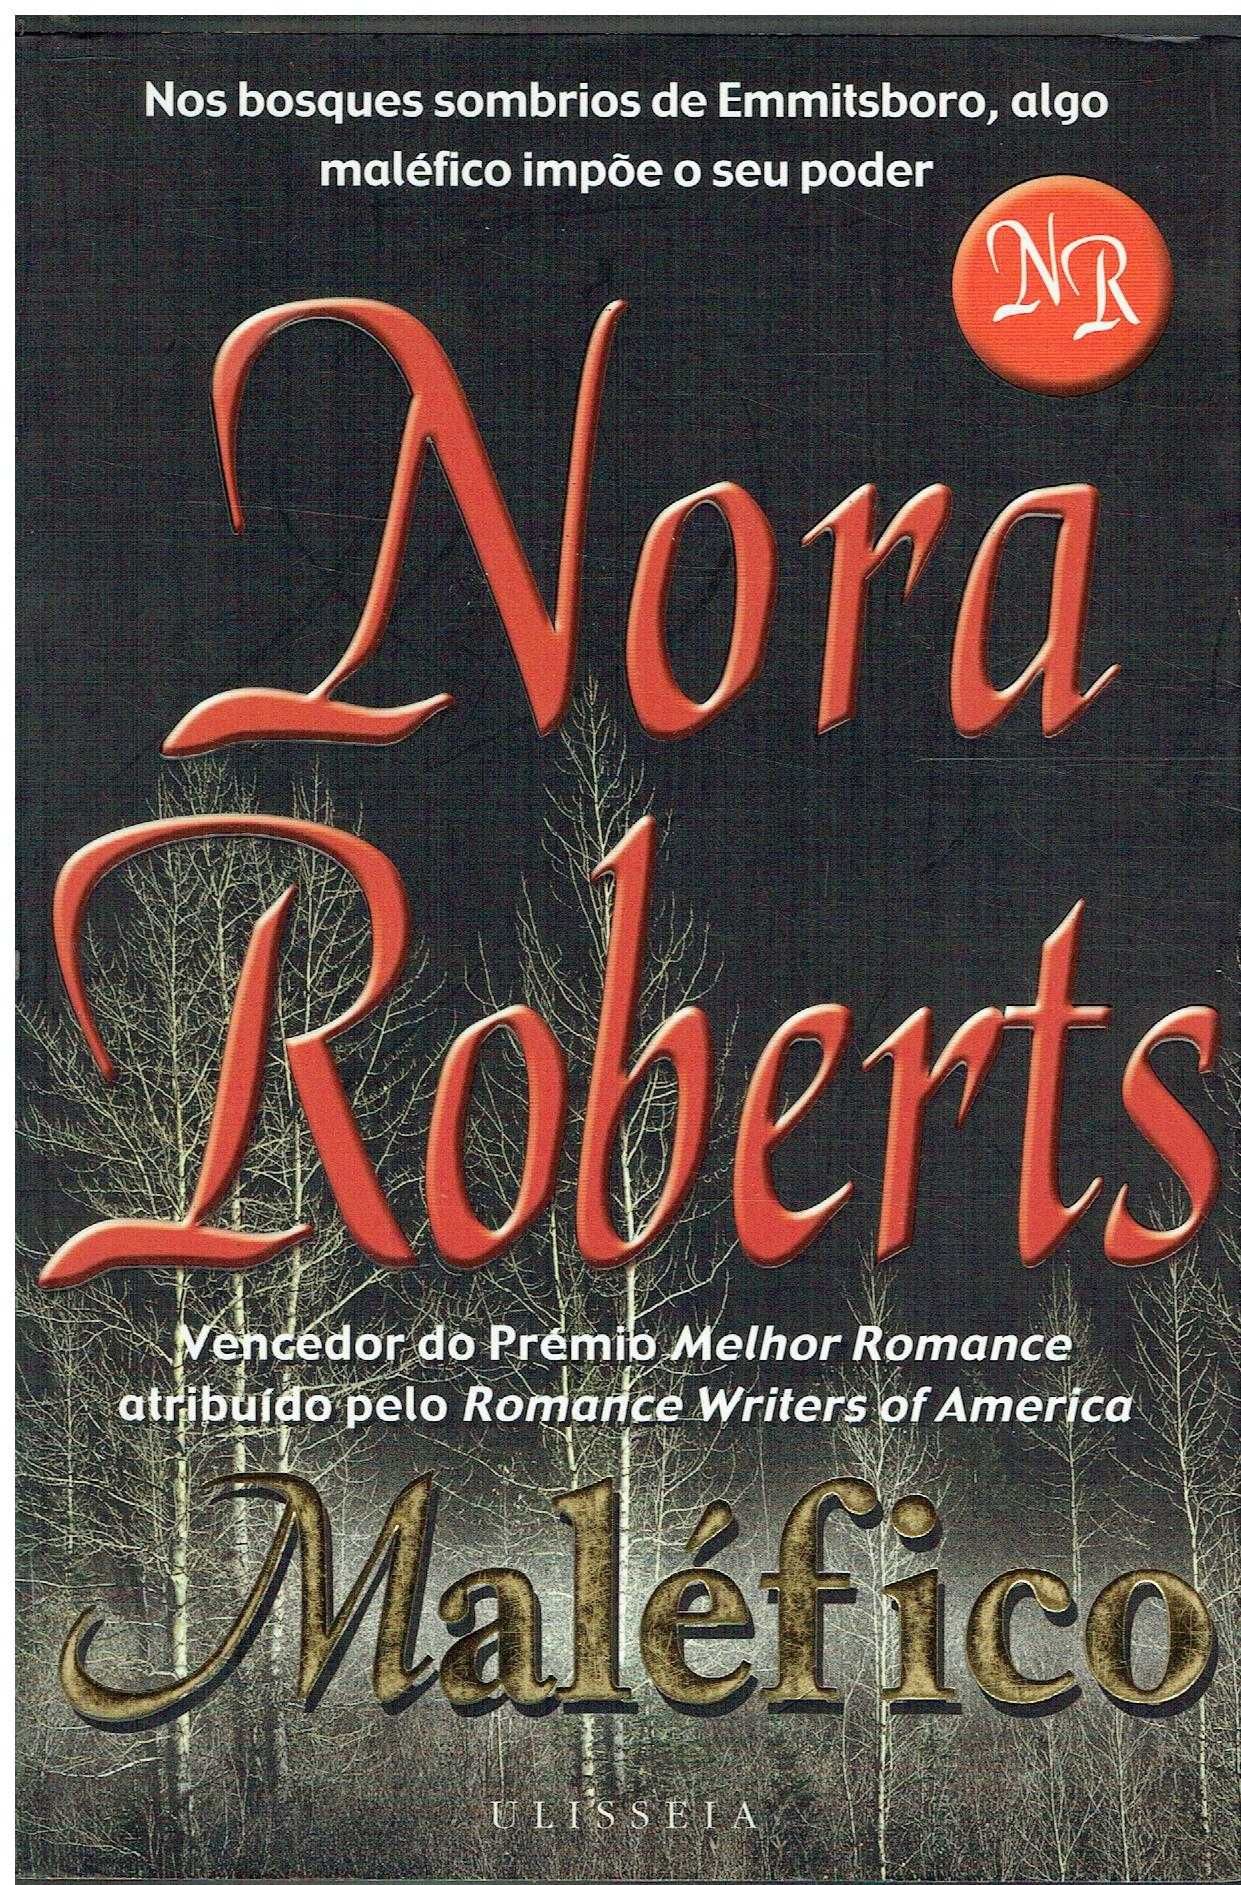 4143

Maléfico
de Nora Roberts